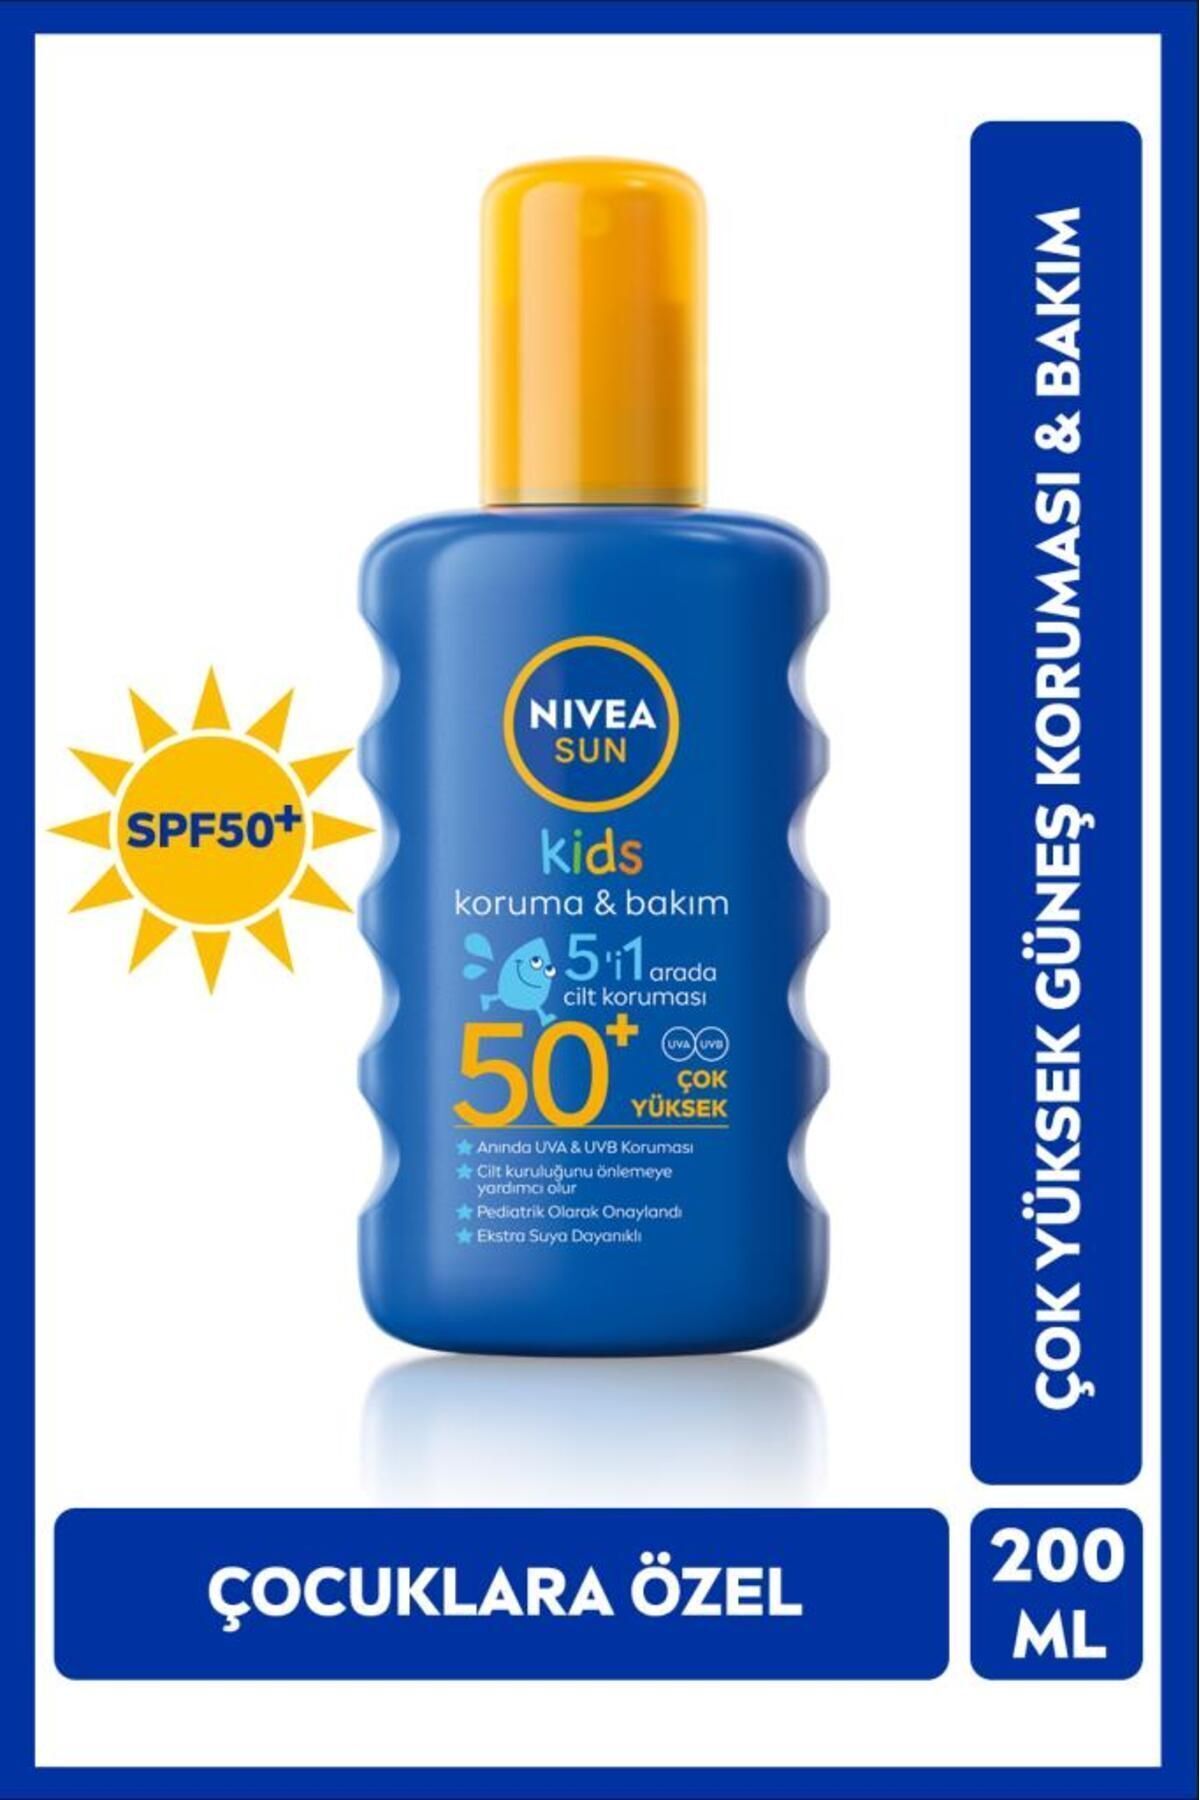 NIVEA Sun Kids Bebekler Için Hassas Güneş Koruyucu 200ml, Spf50, Nemlendirici, Suya Dayanıklı